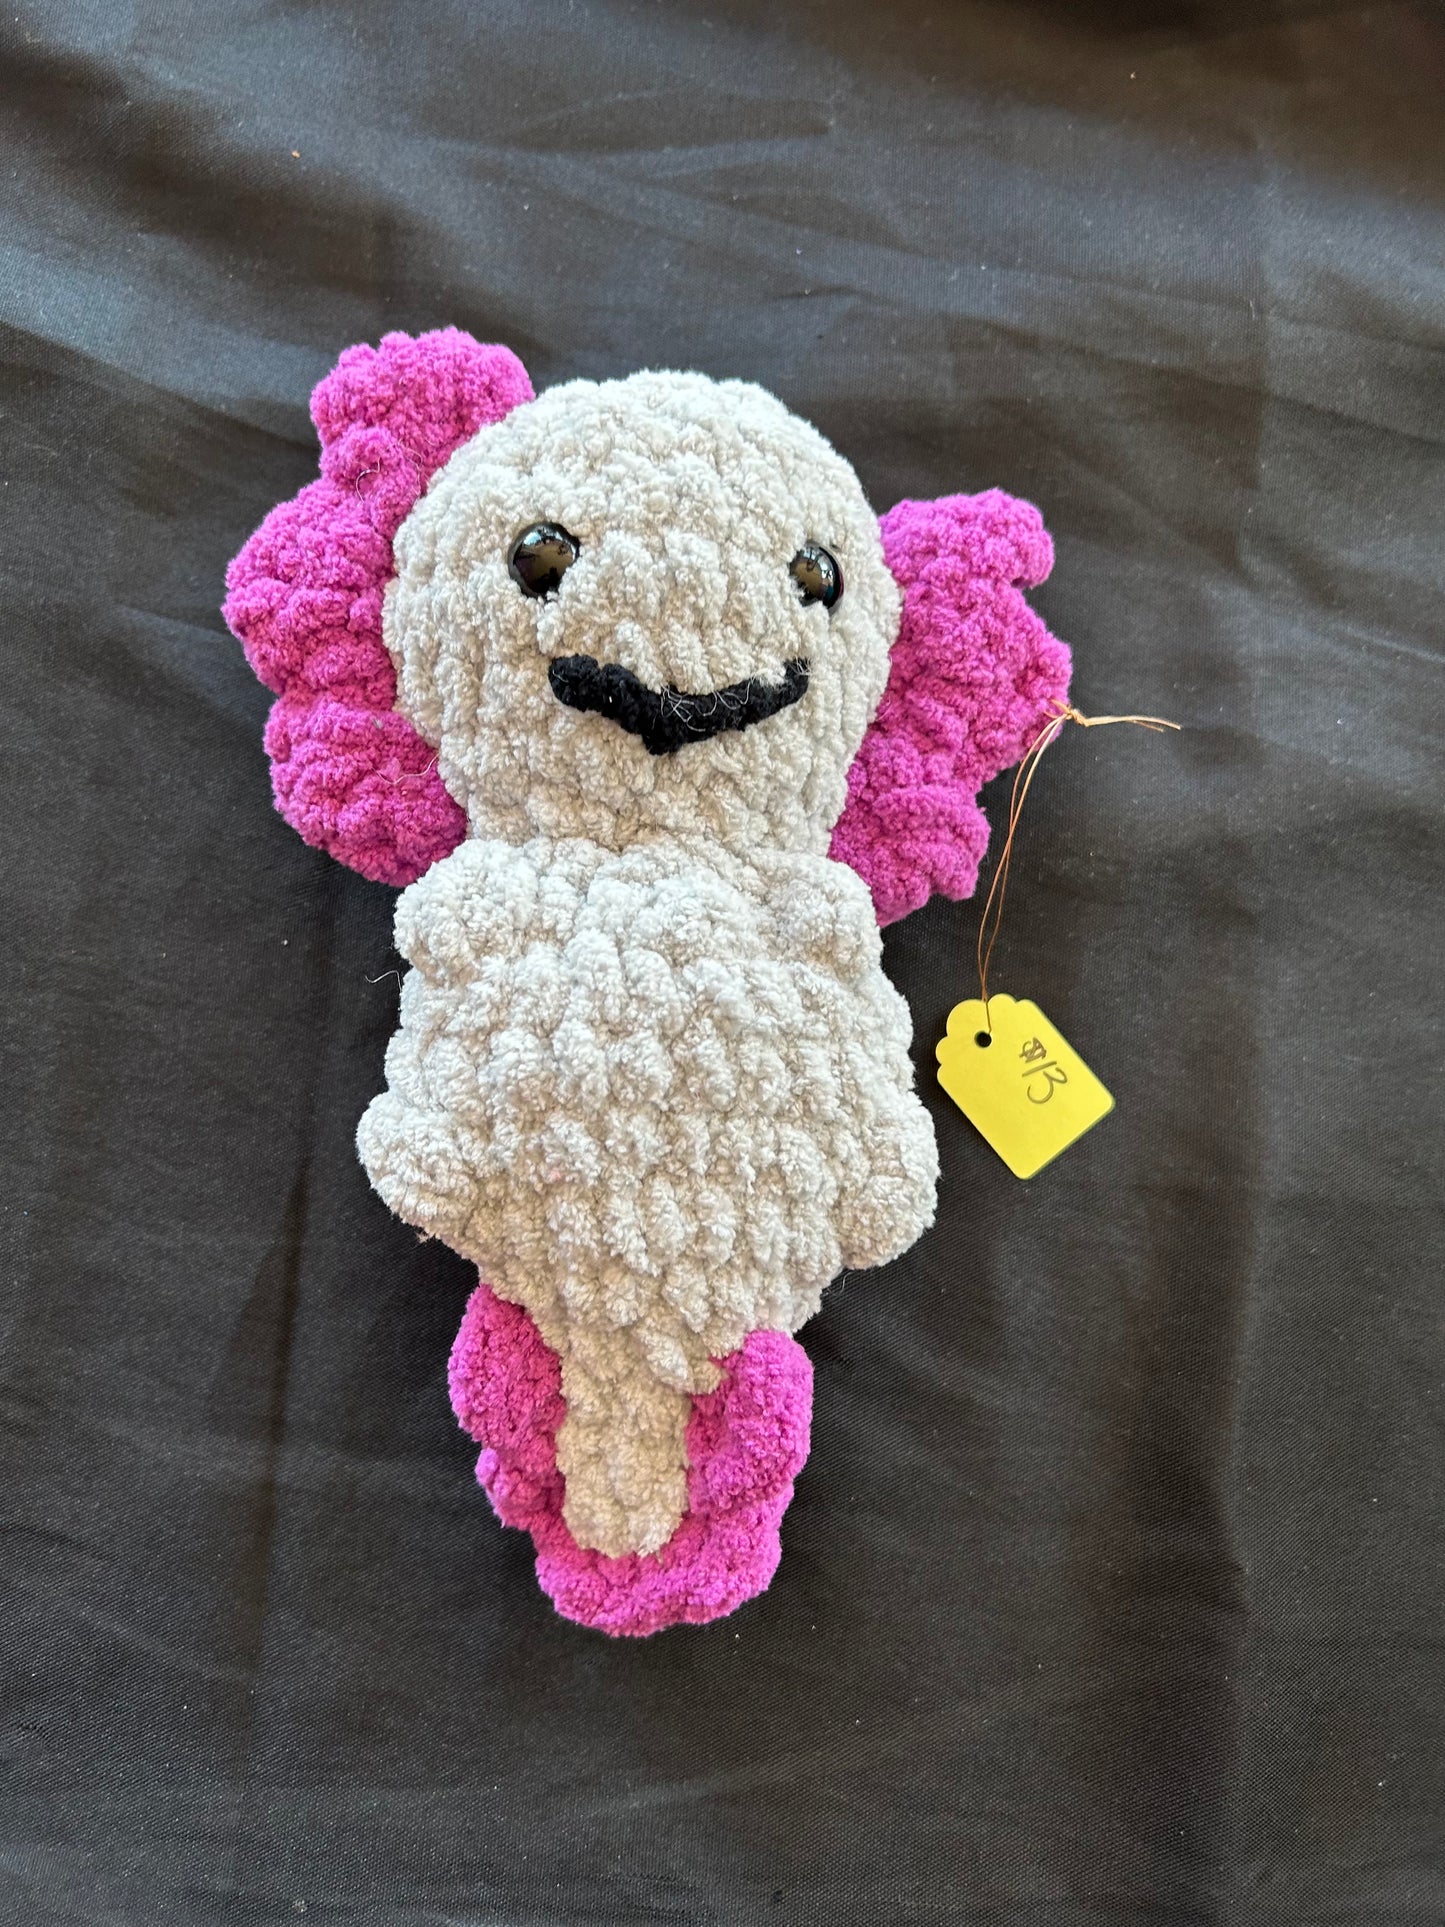 Crocheted Stuffed Animal